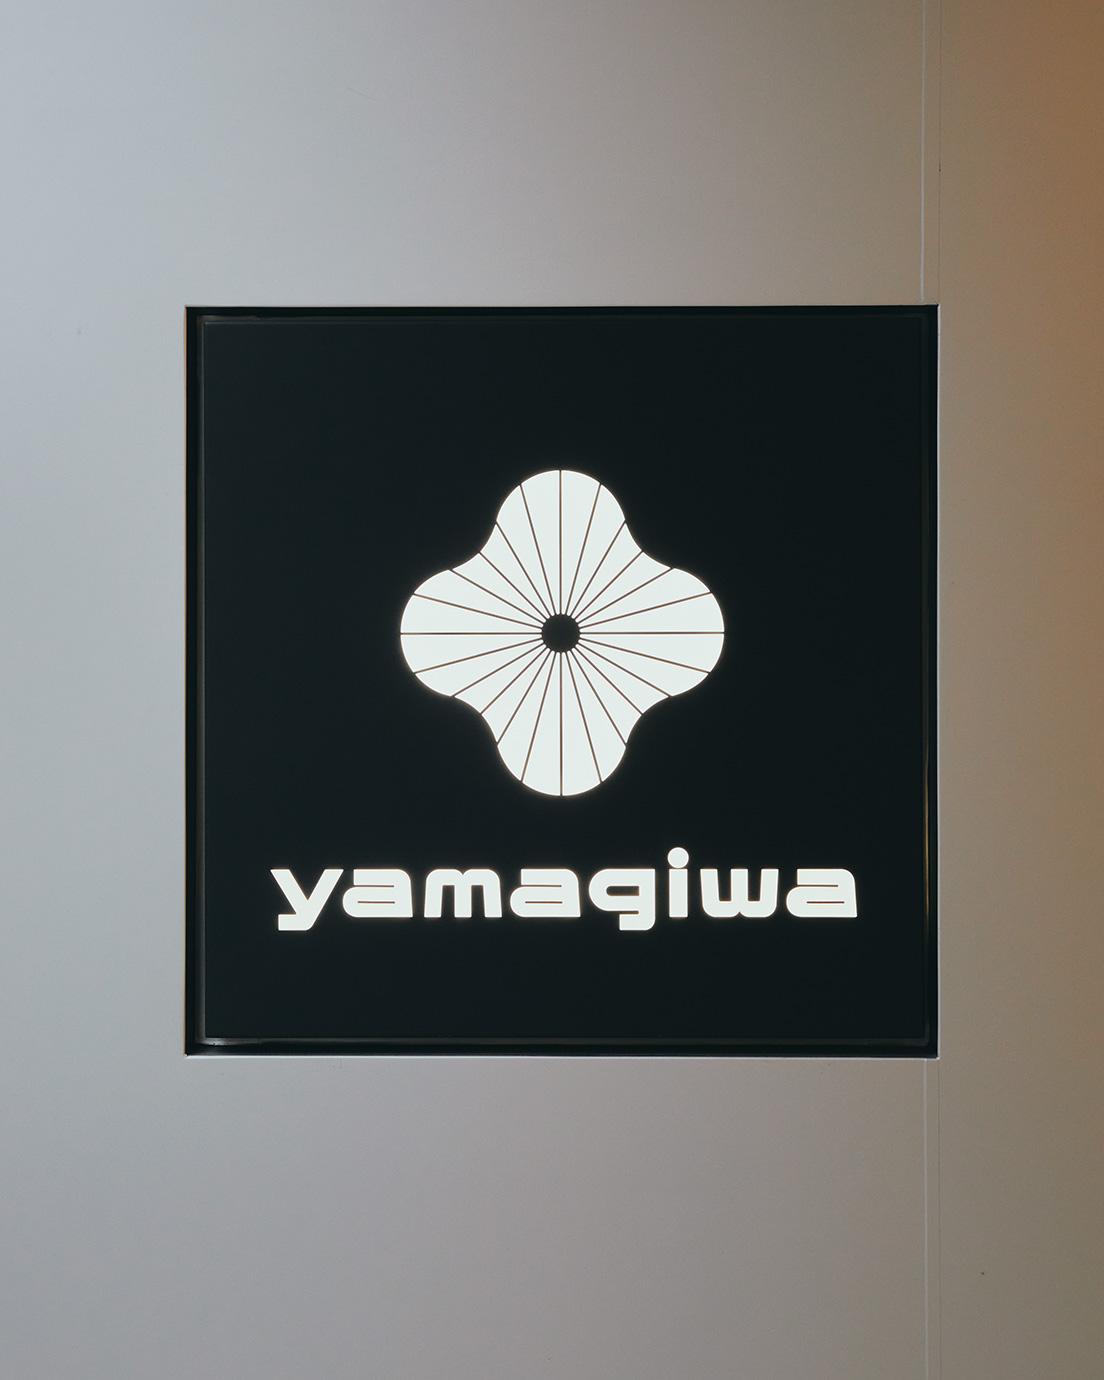 亀倉雄策がデザインしたロゴマーク。デジタルデバイスの進化に合わせ、2014年に佐藤卓が細部をリファインしている。